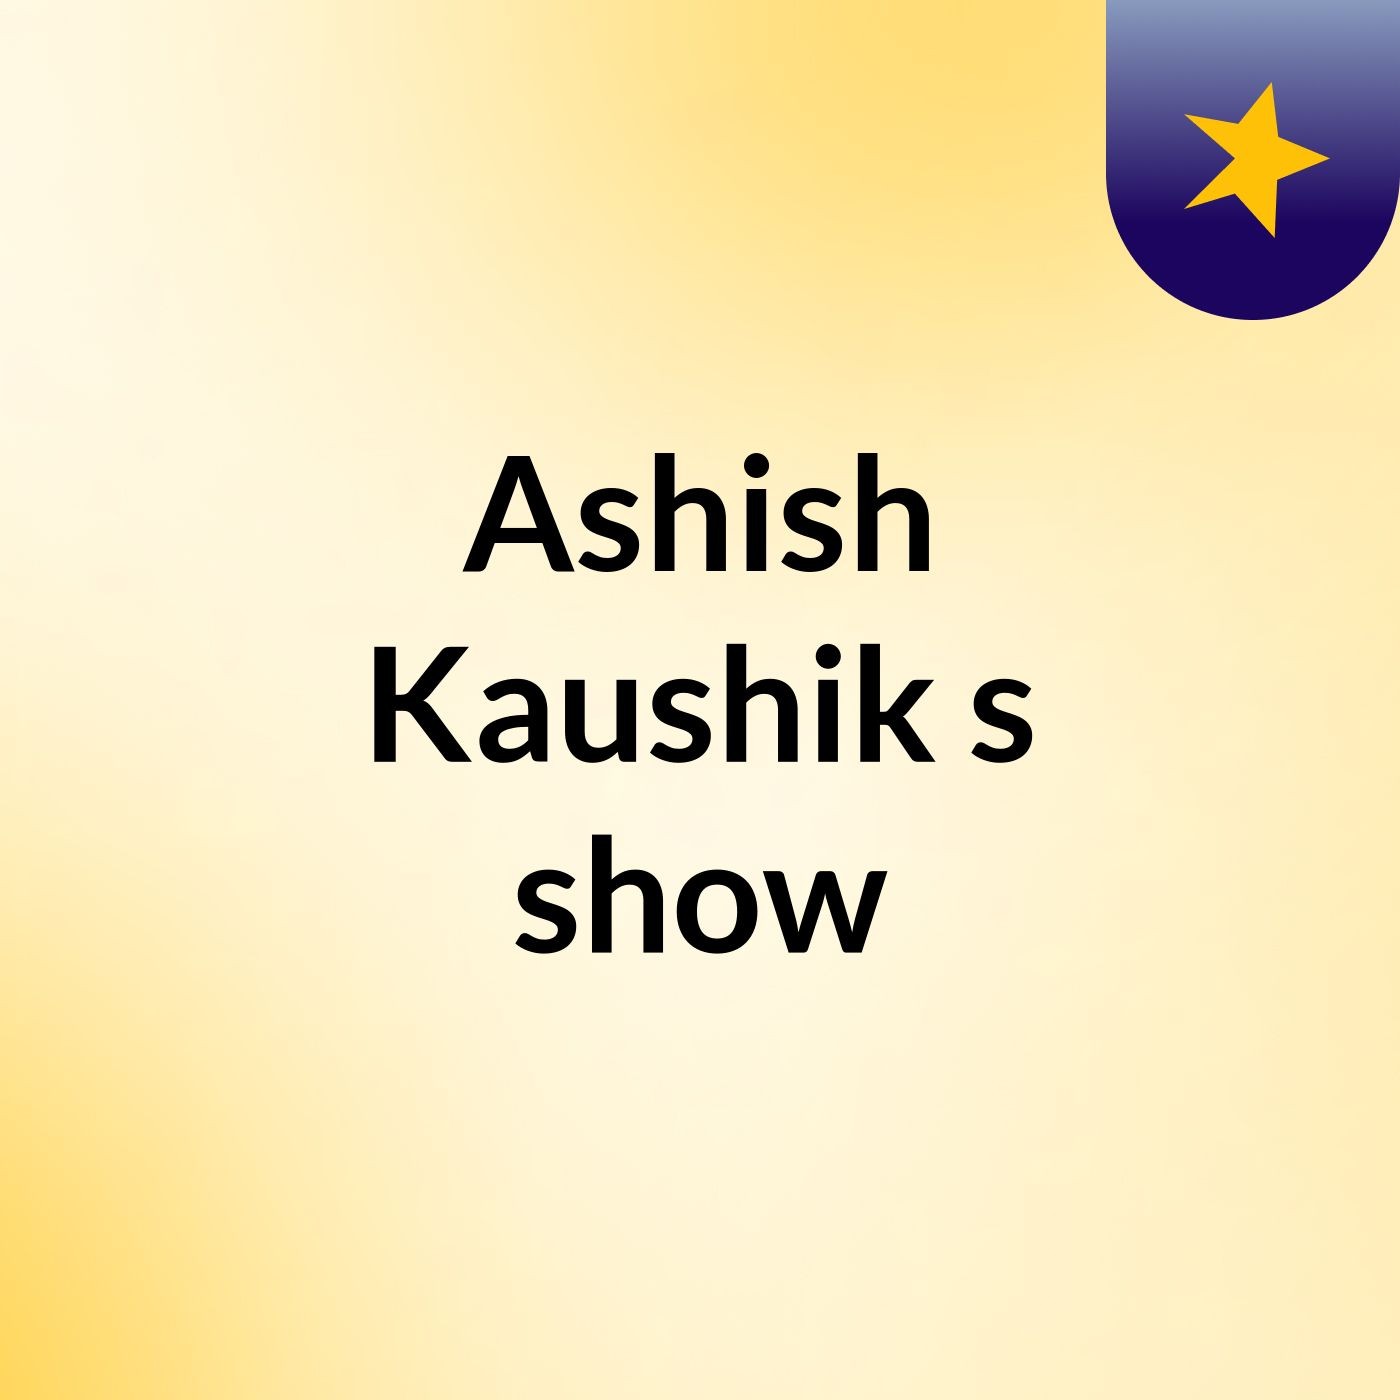 Ashish Kaushik's show